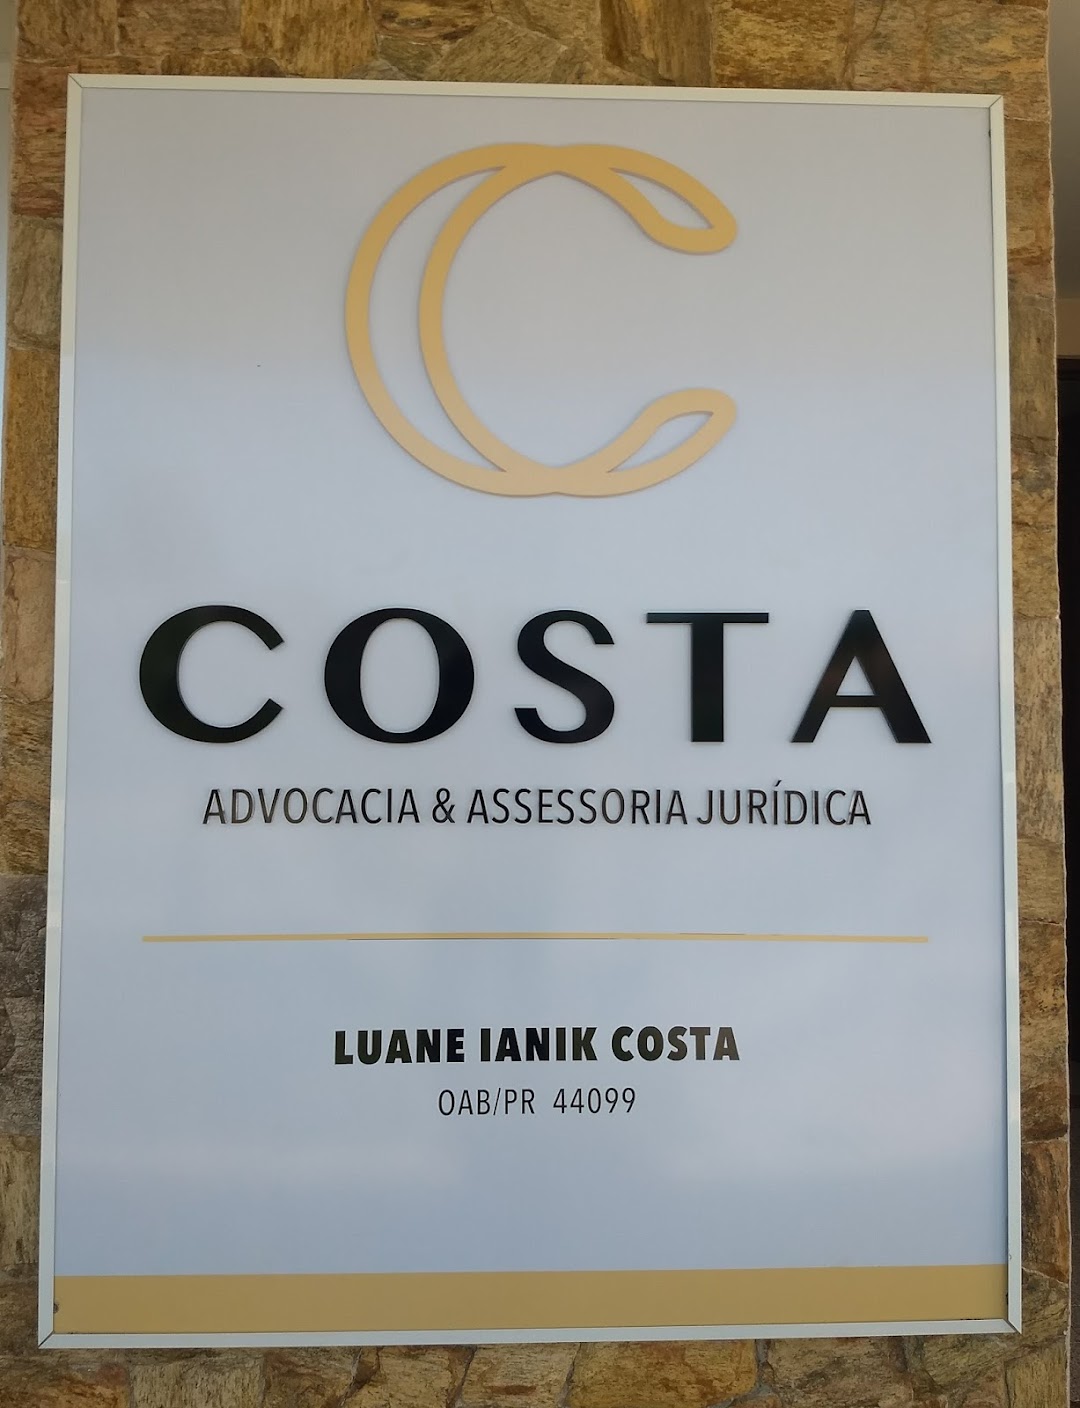 COSTA - Advocacia e Assessoria Jurídica